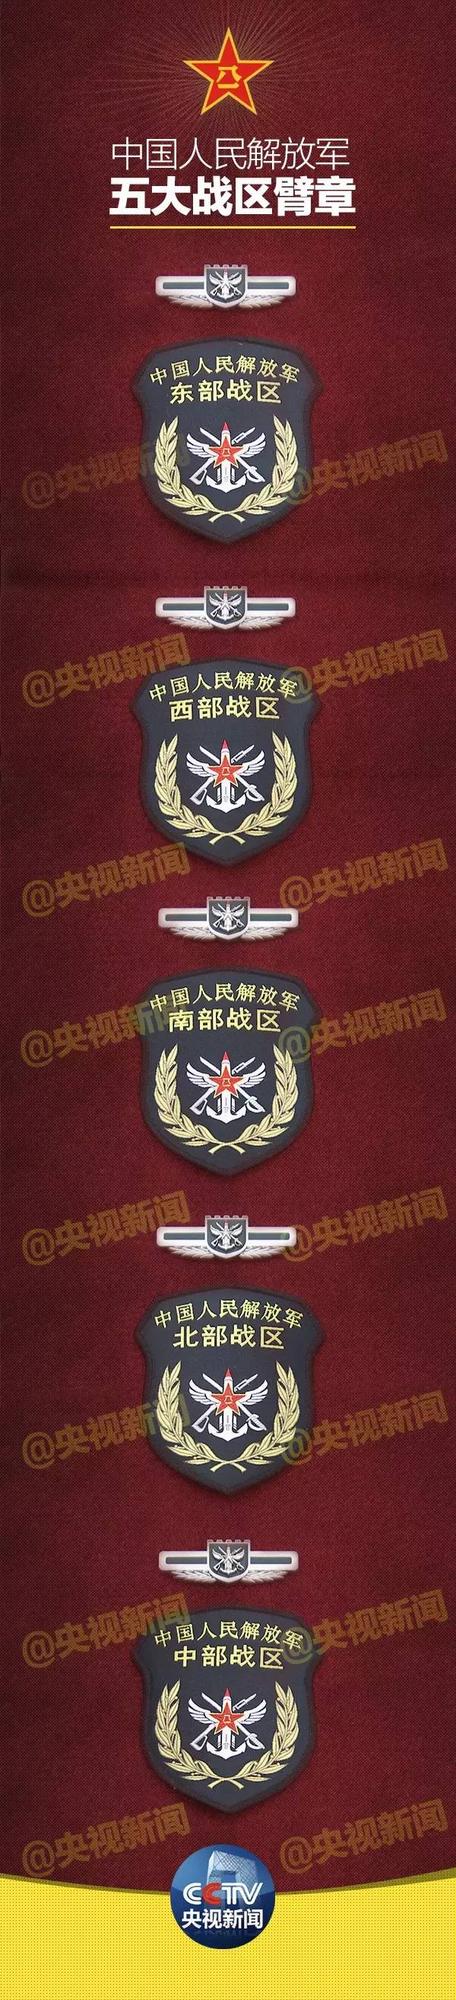 解放军五大战区成立大会在北京举行 臂章曝光